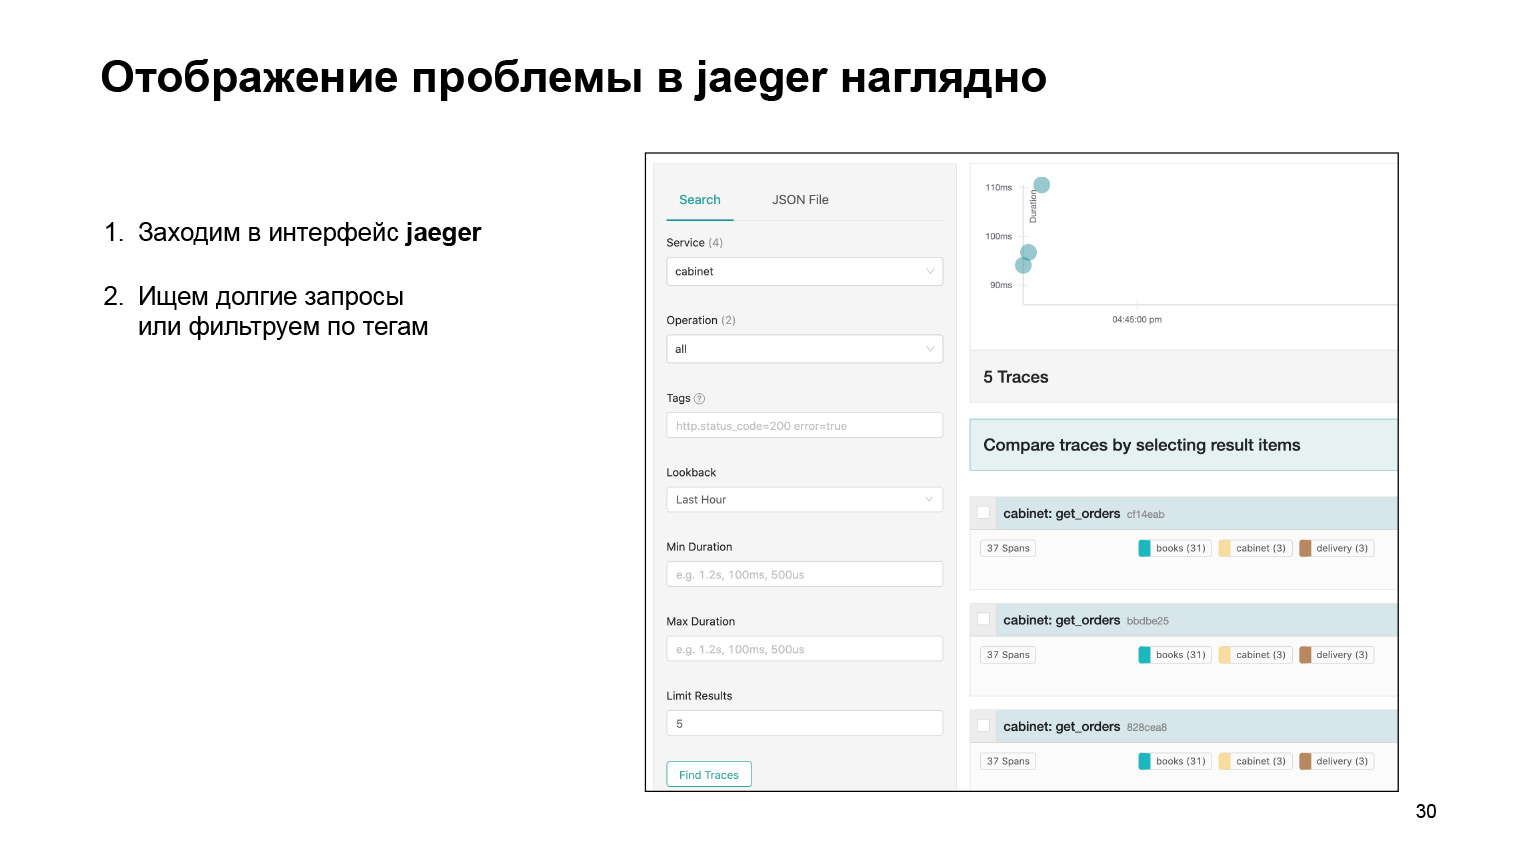 Удобное логирование на бэкенде. Доклад Яндекса - 23